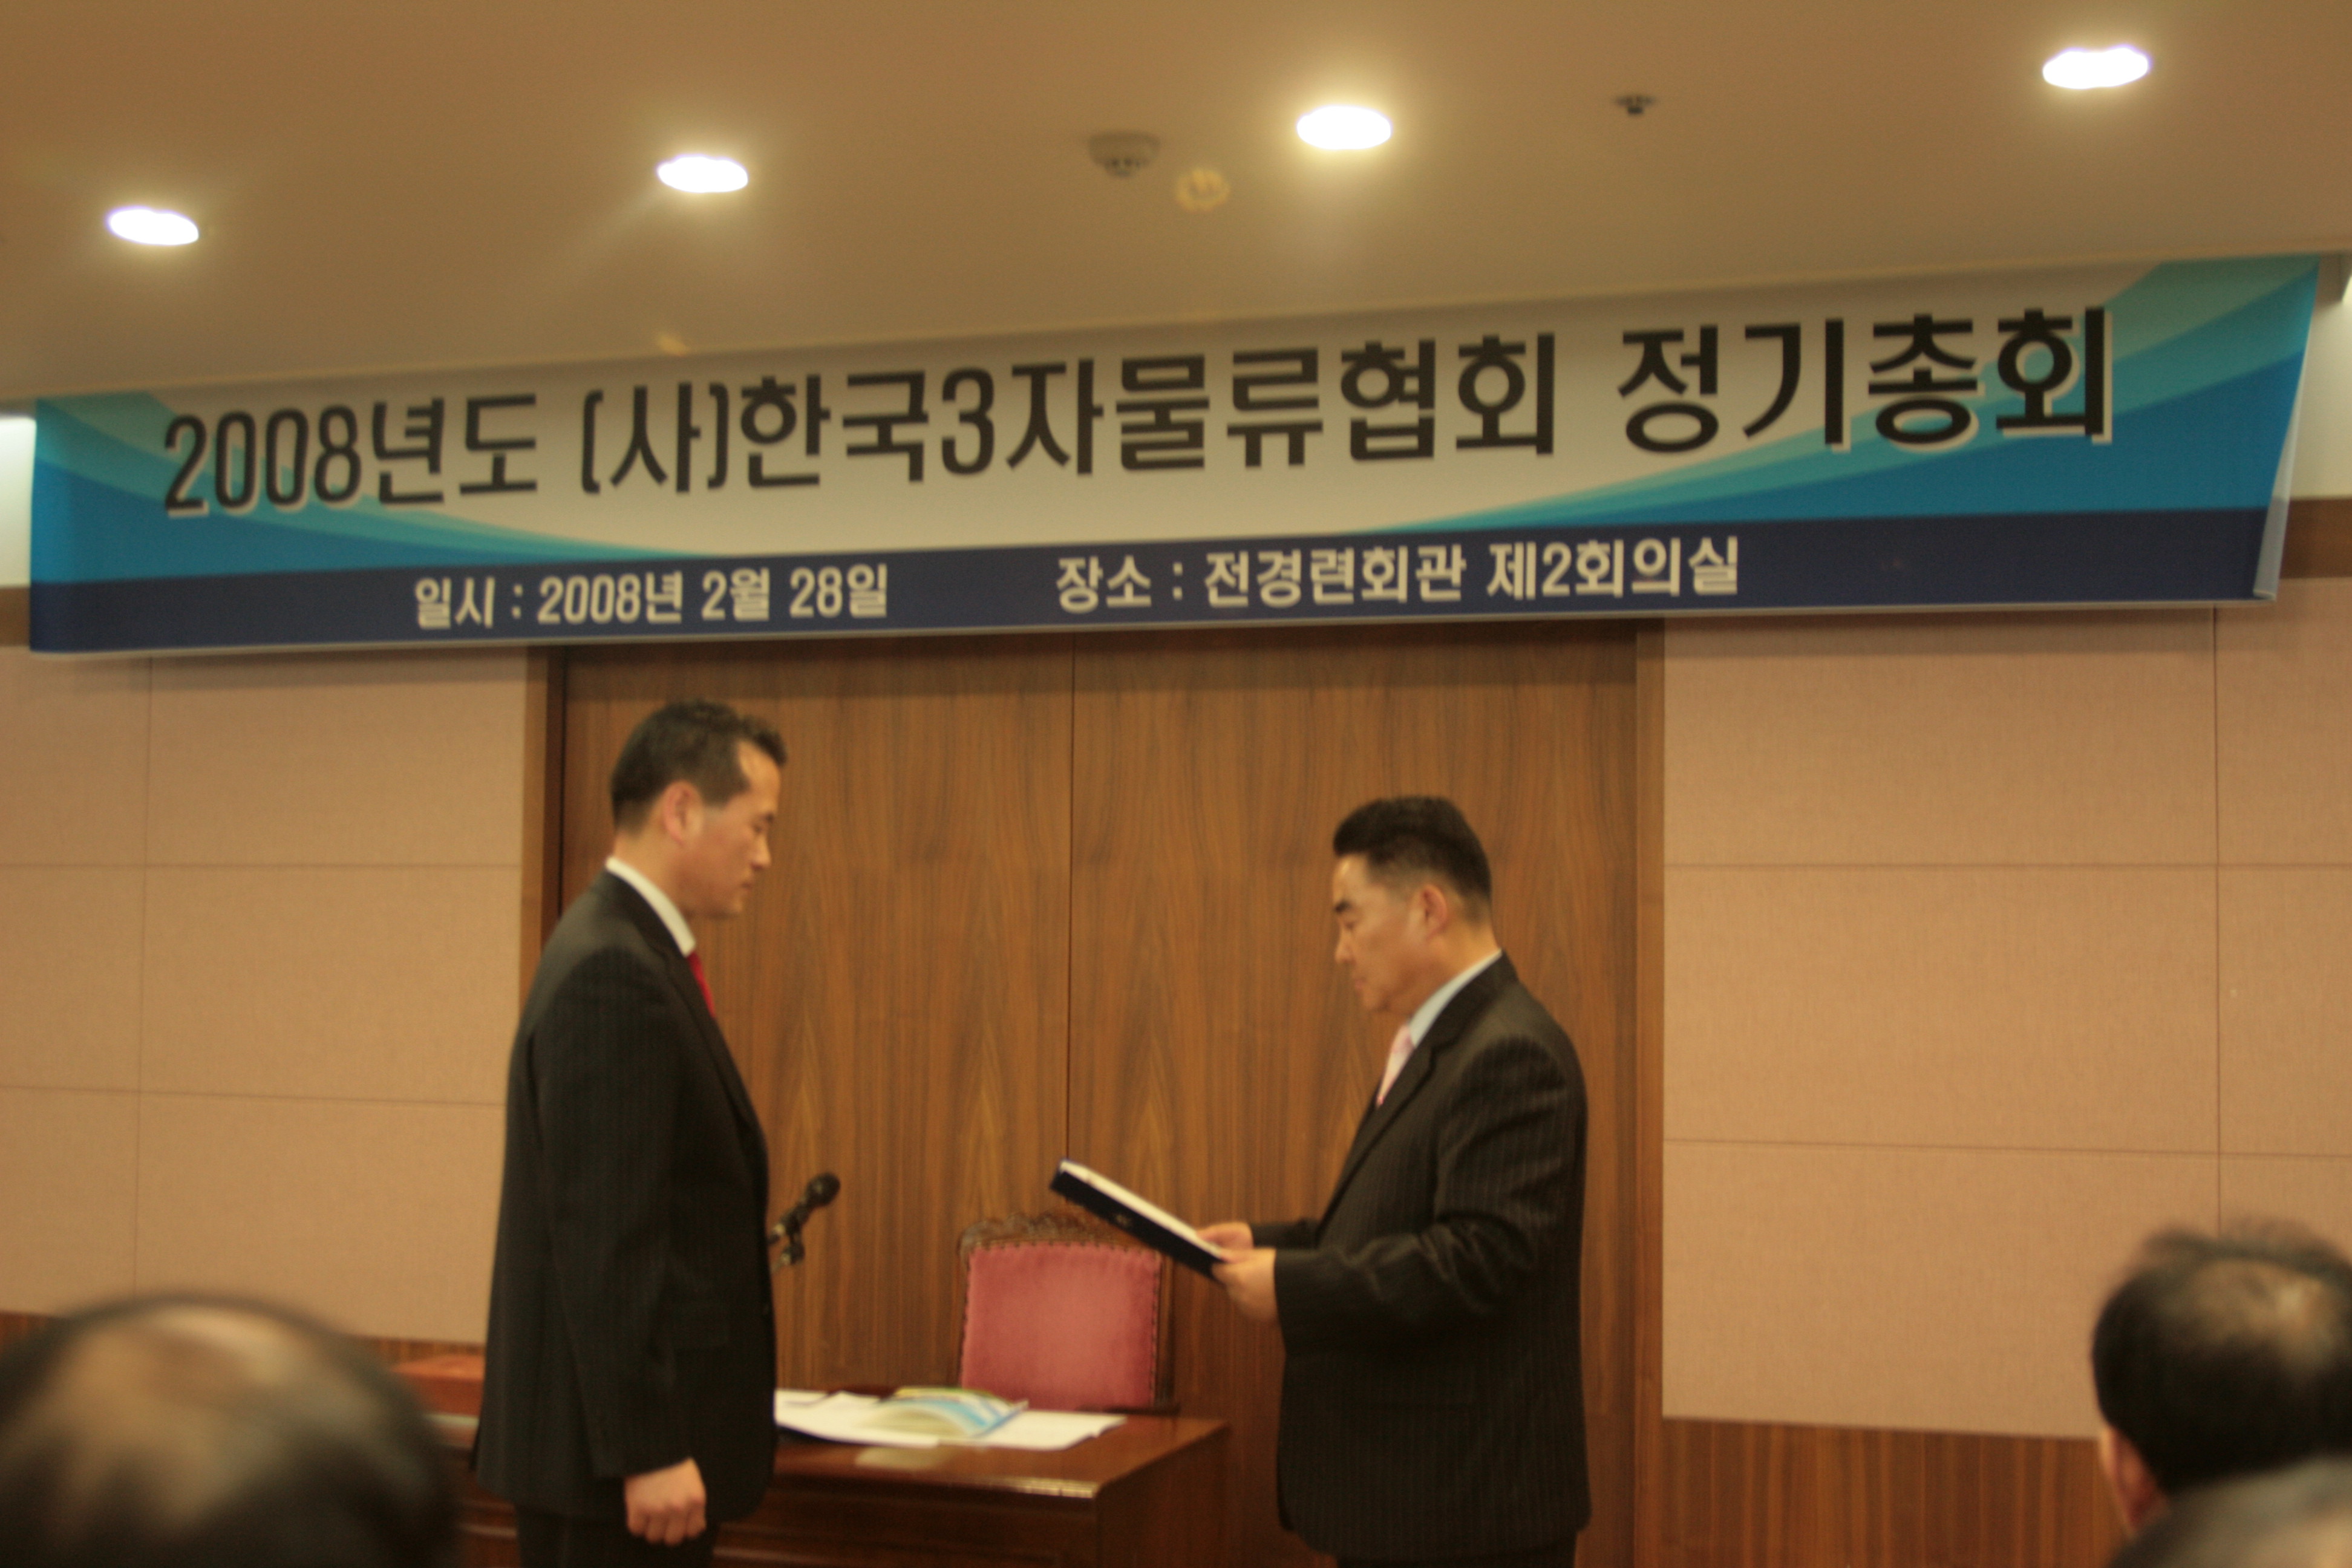 한국3자물류협회(KTPL) 가입